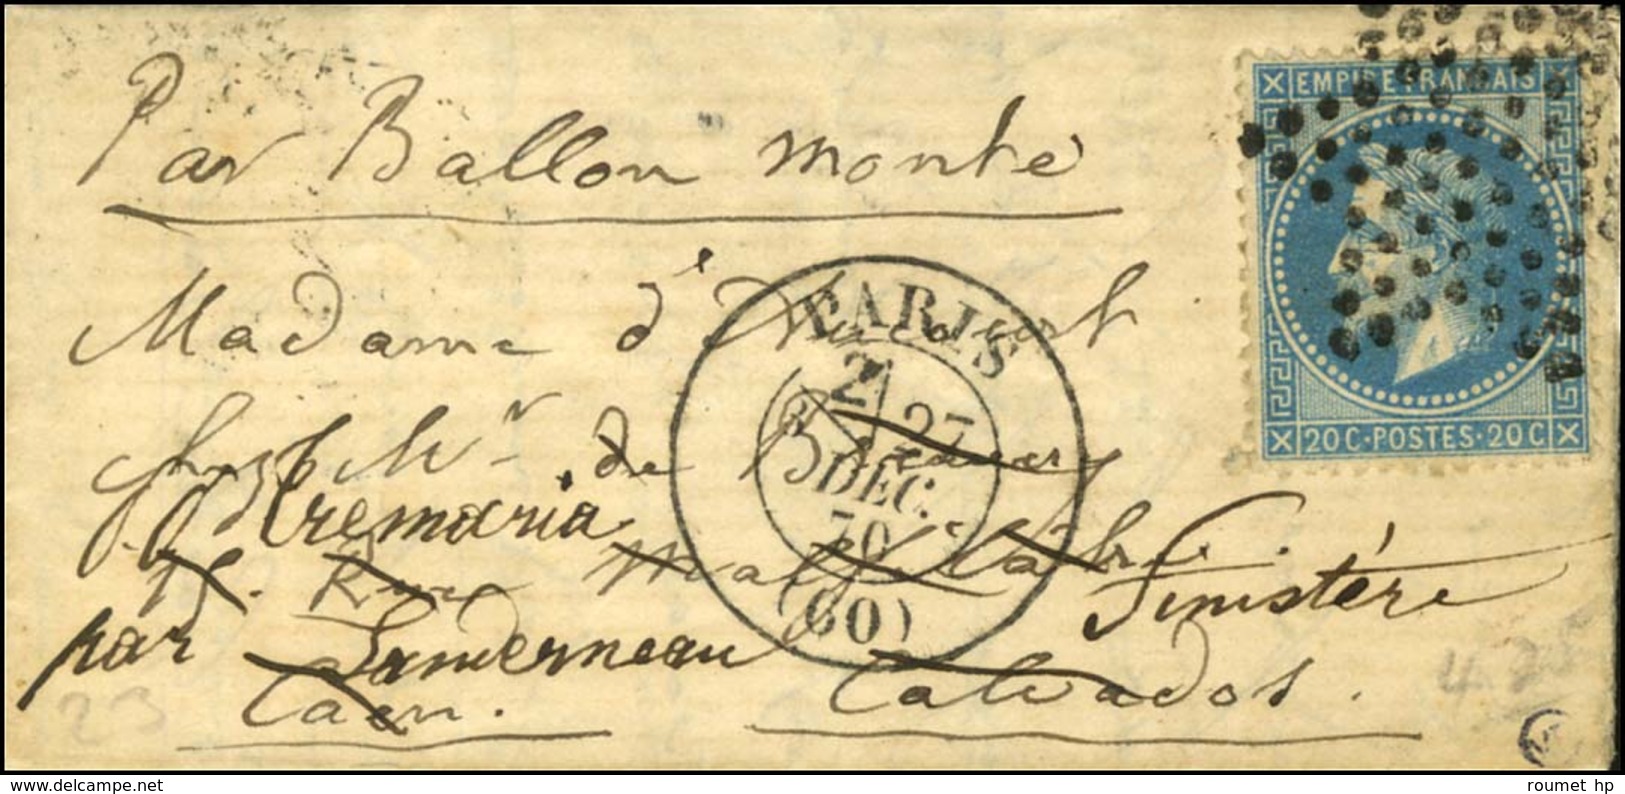 Etoile / N° 29 Càd PARIS (60) 27 DEC. 70 Sur Lettre Pour Caen Réexpédiée à Landerneau, Au Verso Càd D'arrivée 31 DEC. 70 - War 1870